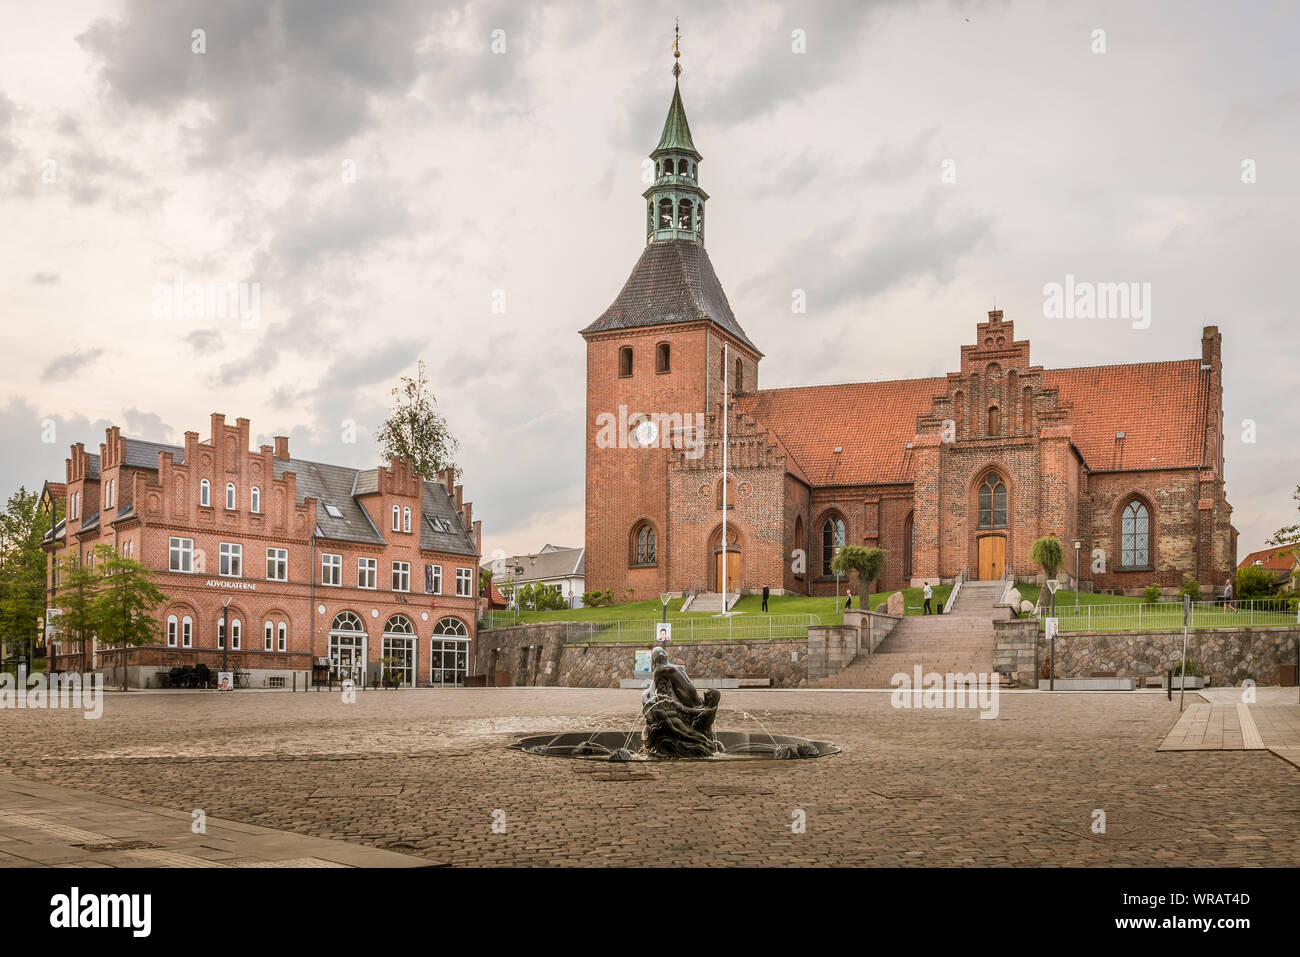 La chiesa e la fontana della piazza di Svendborg contro un cielo grigiastro. Svendborg, Danimarca, luglio 10, 2019 Foto Stock